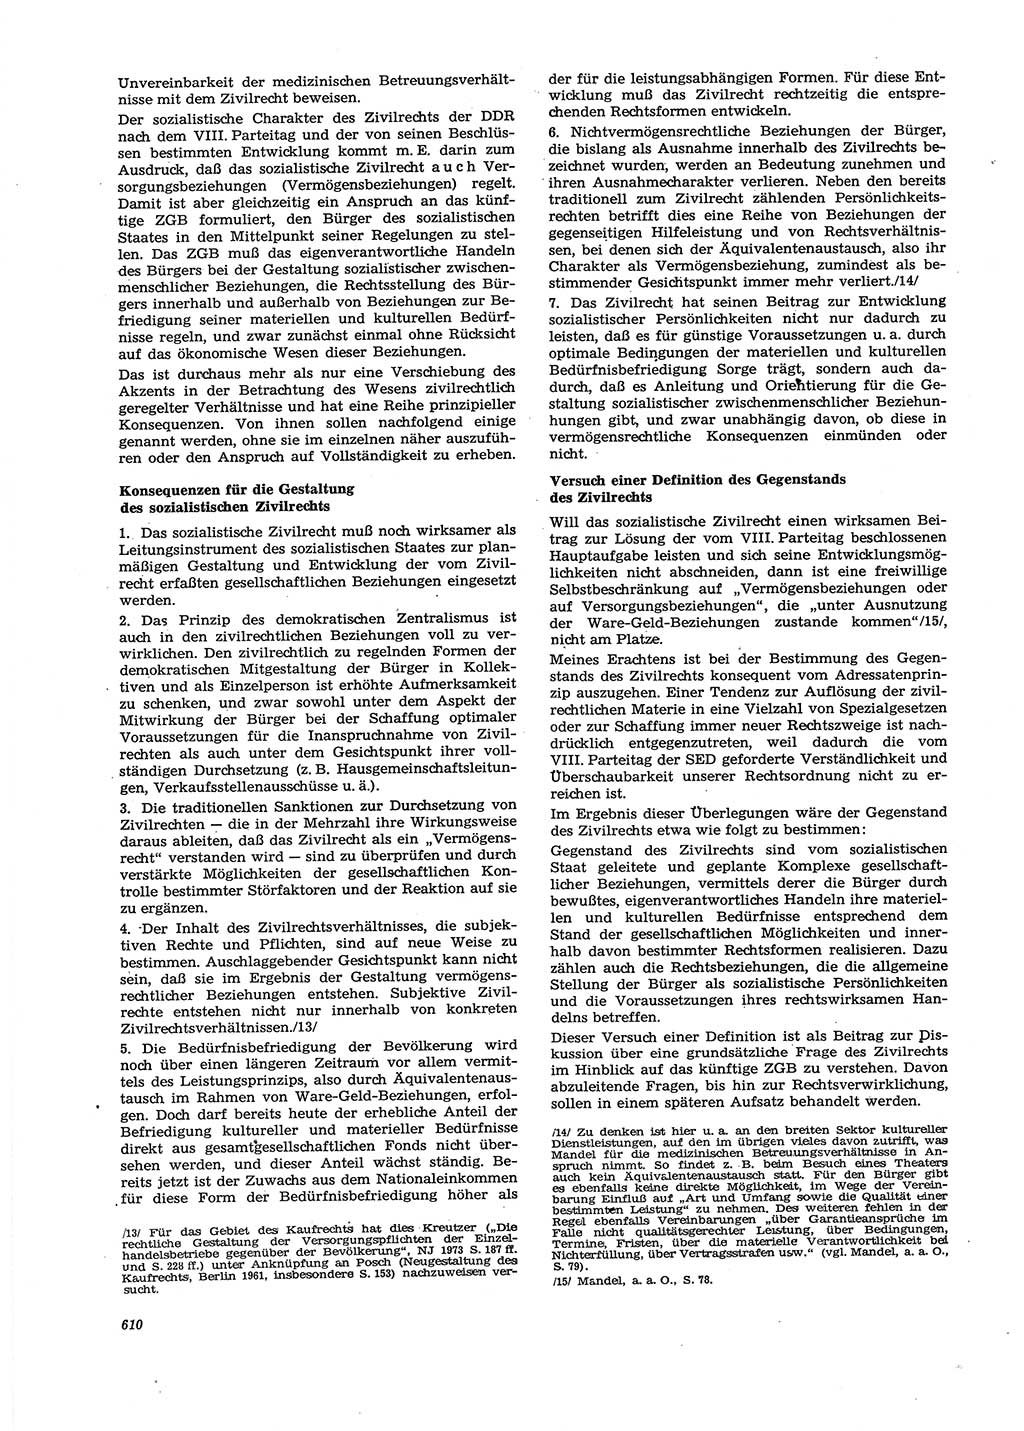 Neue Justiz (NJ), Zeitschrift für Recht und Rechtswissenschaft [Deutsche Demokratische Republik (DDR)], 27. Jahrgang 1973, Seite 610 (NJ DDR 1973, S. 610)